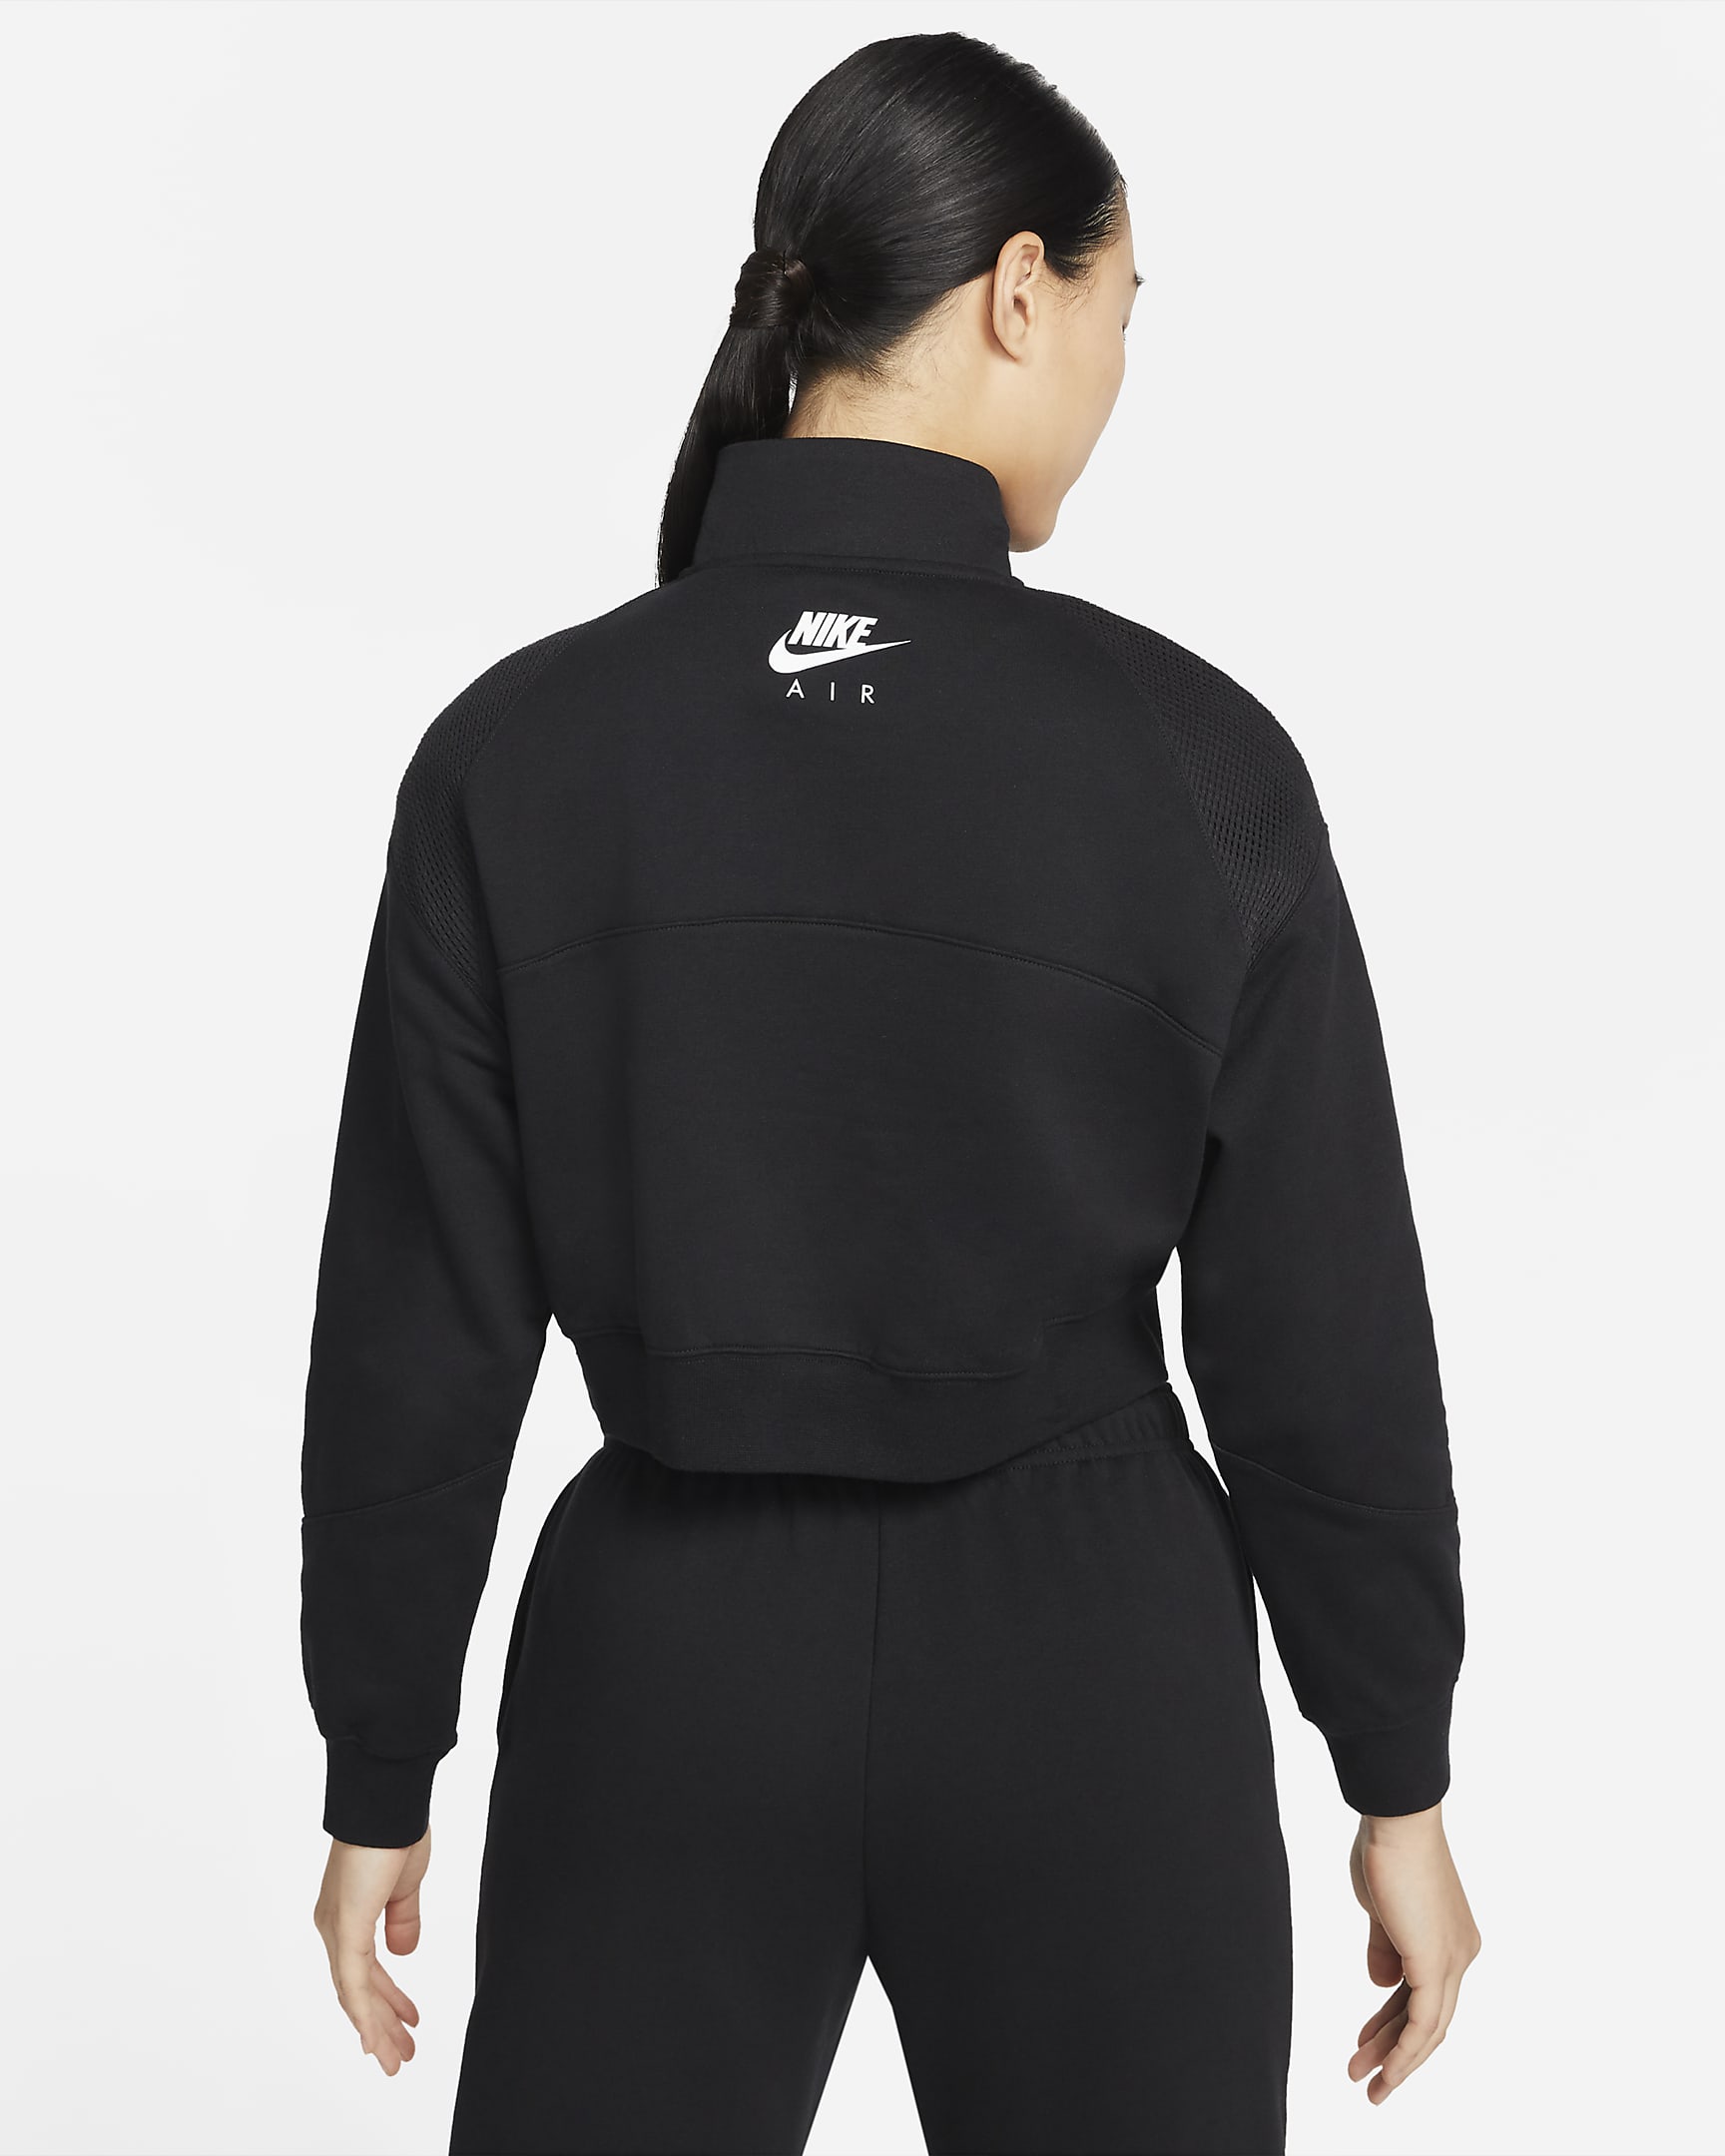 Nike Sportswear Air Women's 1/4-Zip Fleece Top. Nike VN